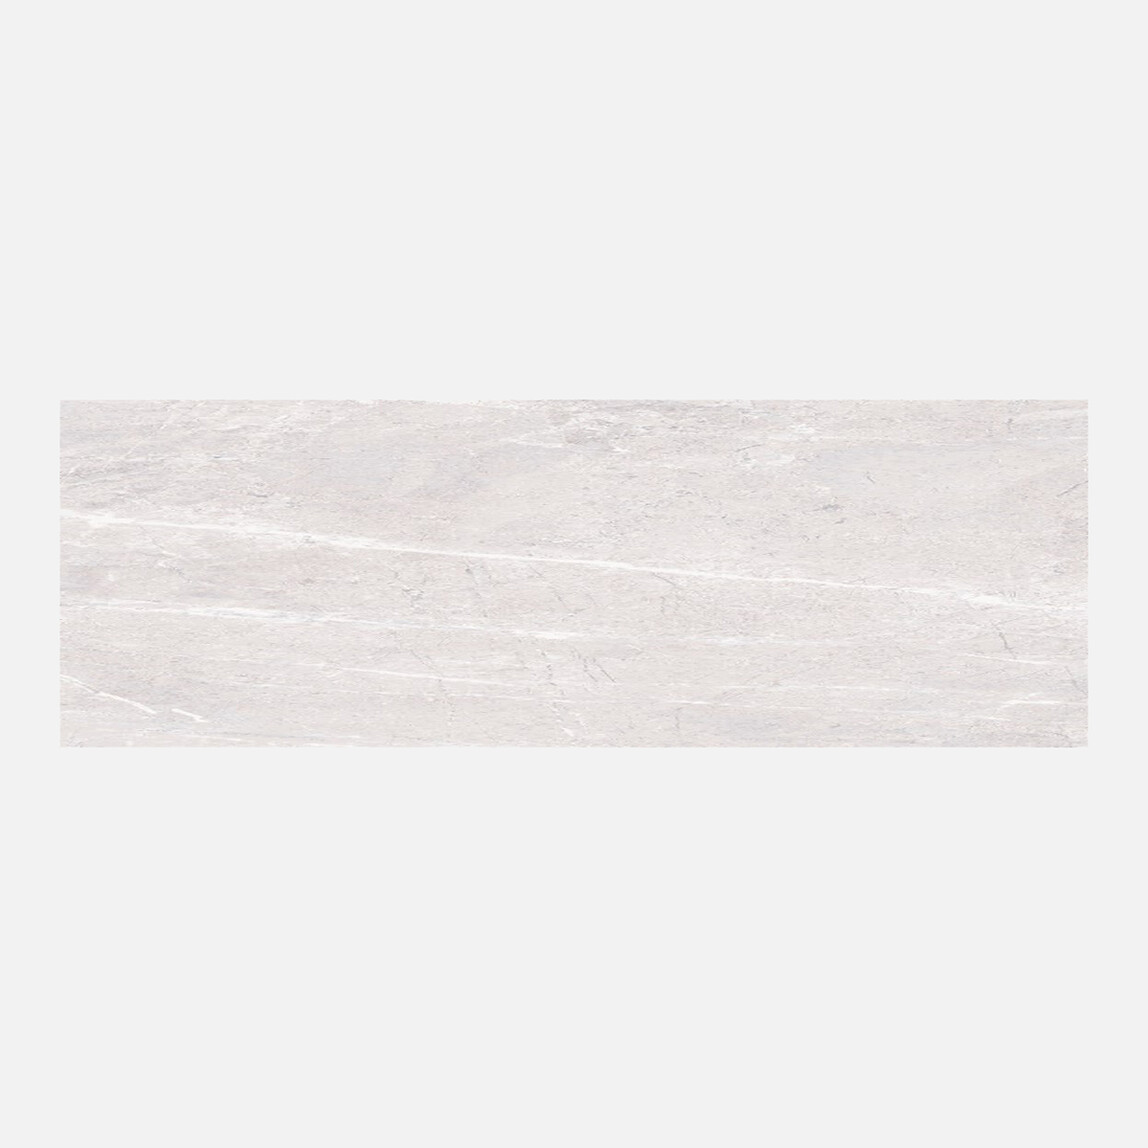    Duratiles Jerico Sırlı Granit 30X60 Kutu Beyaz 2,16 m2 